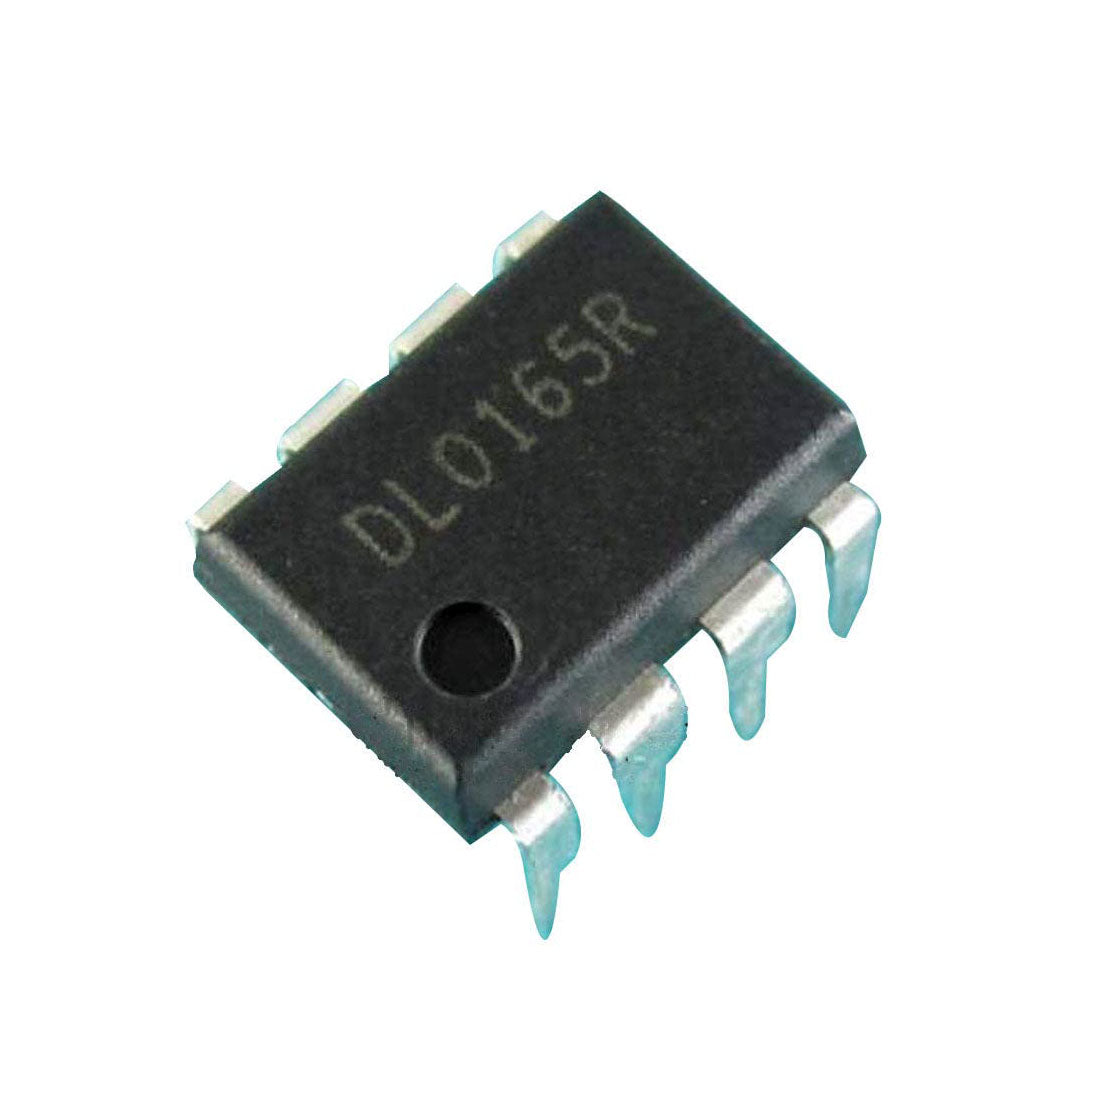 DL0165R Componente elettronico, circuito integrato, transistor, 8 contatti